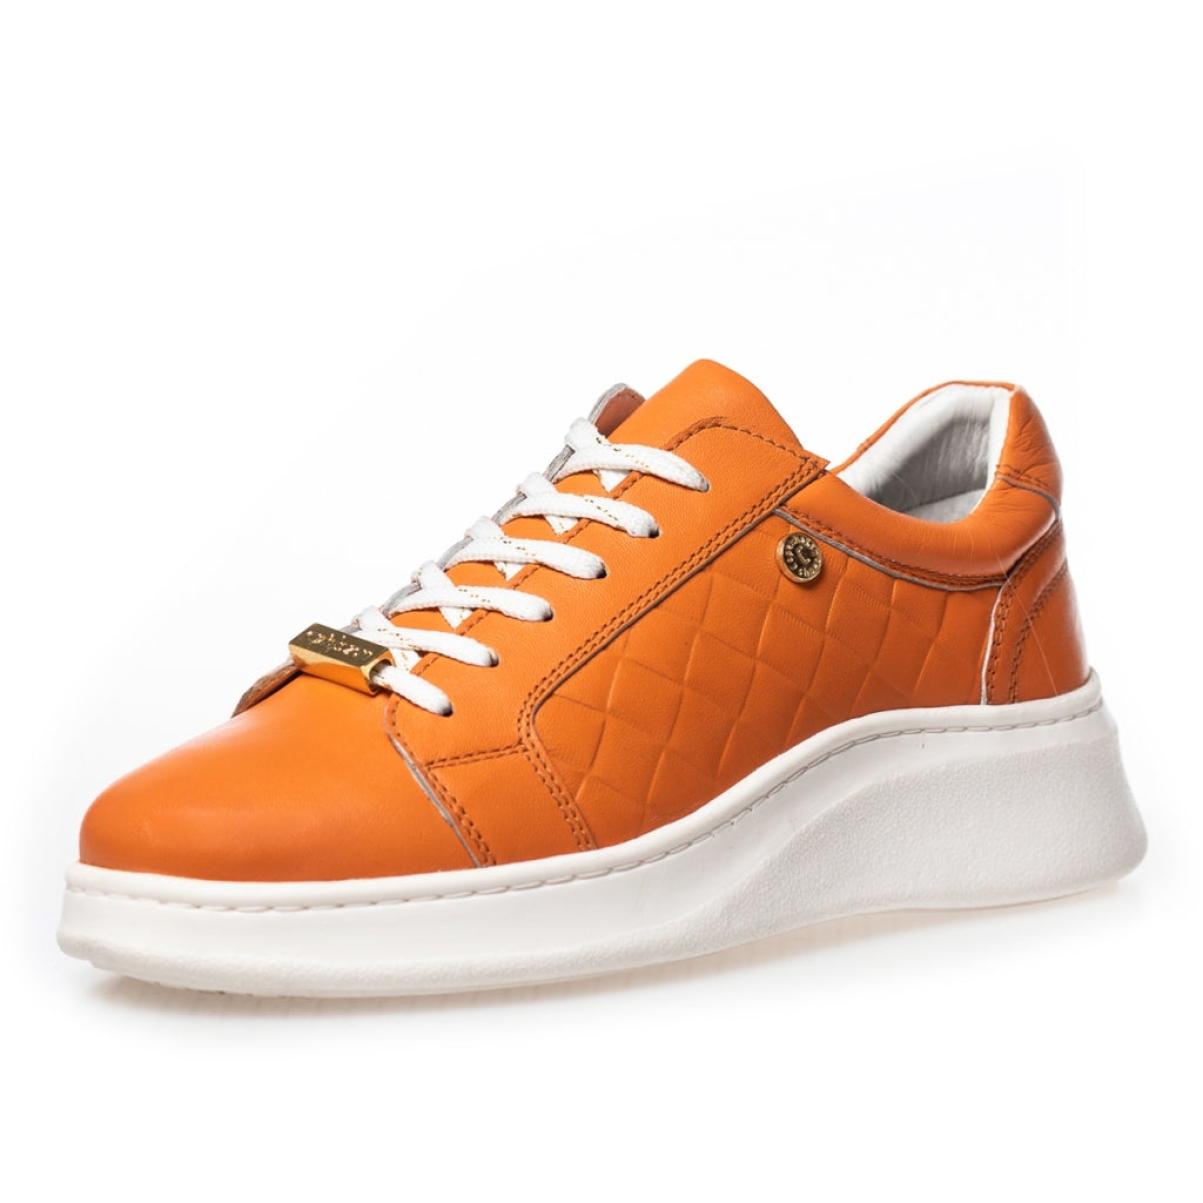 Sneakers Love - Burnt Orange Sneakers Relaxing Copenhagen Shoes Women - 1